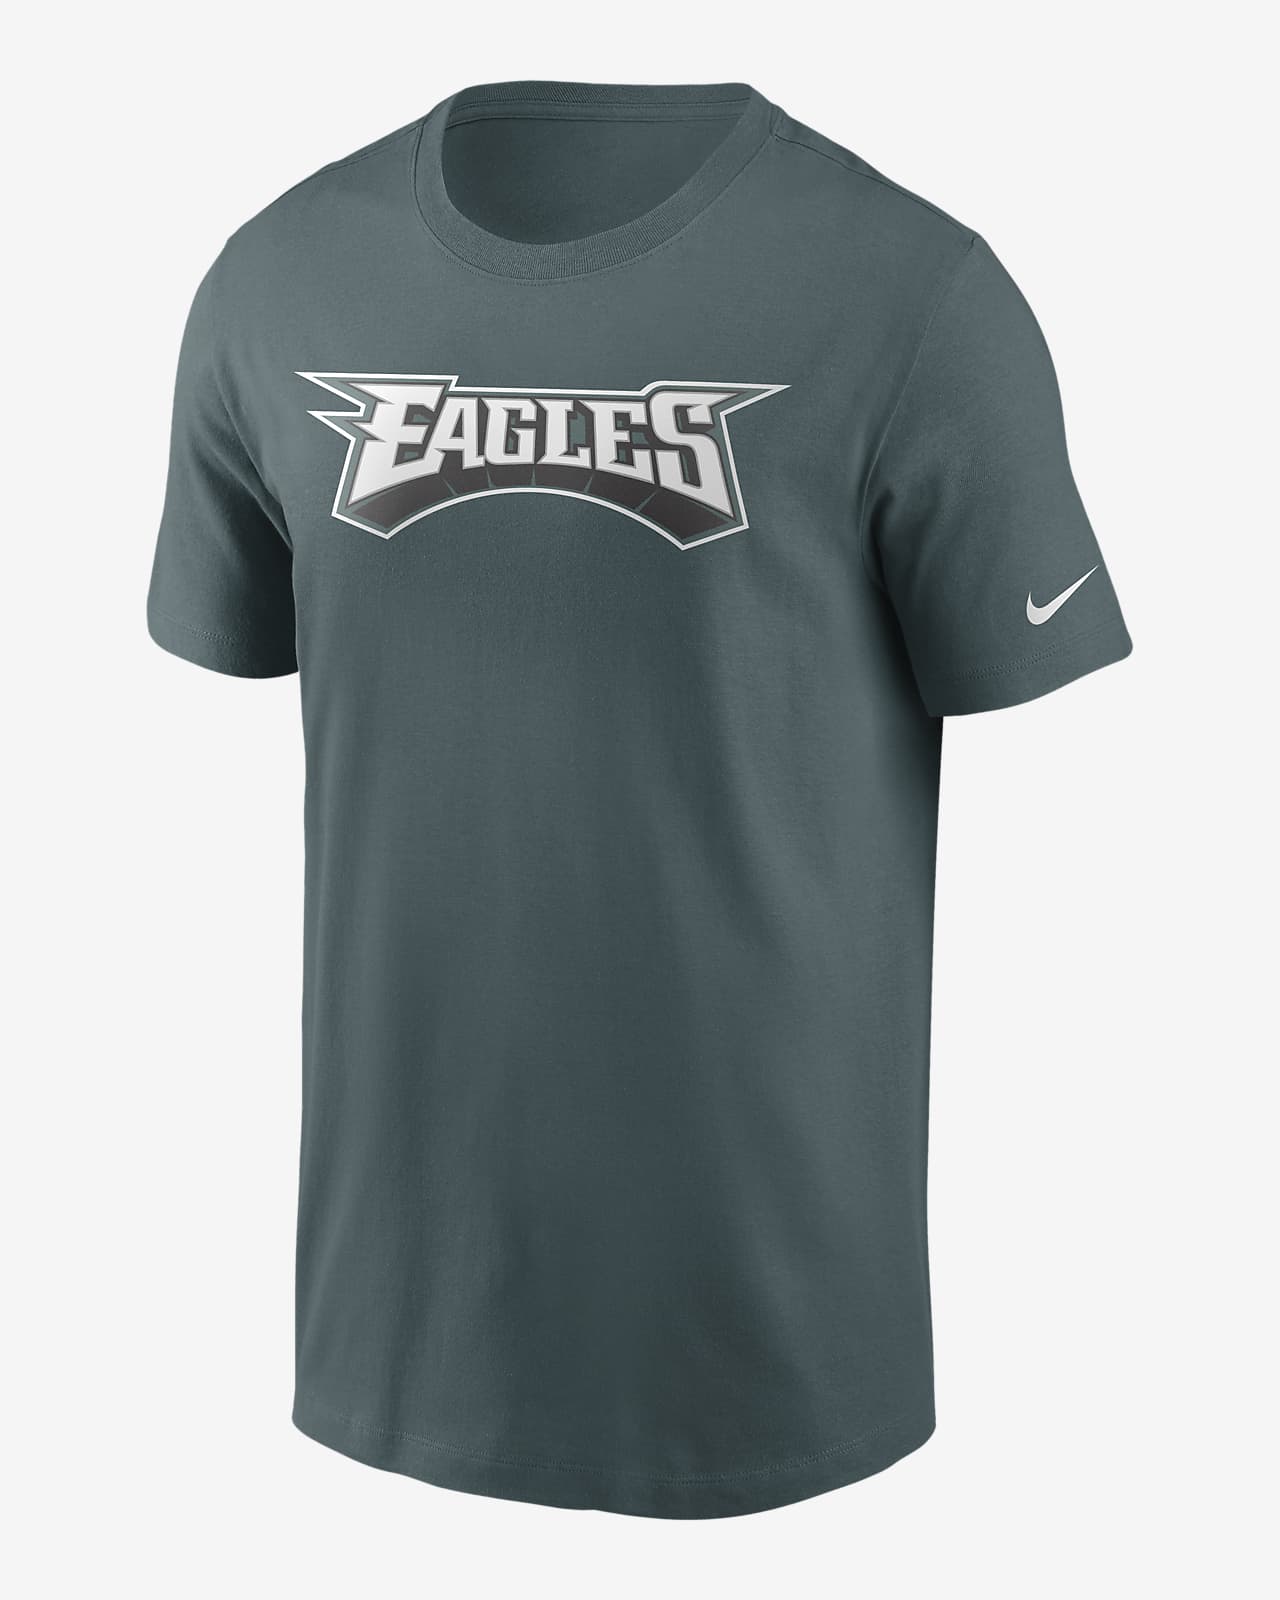 eagles nfl shirts